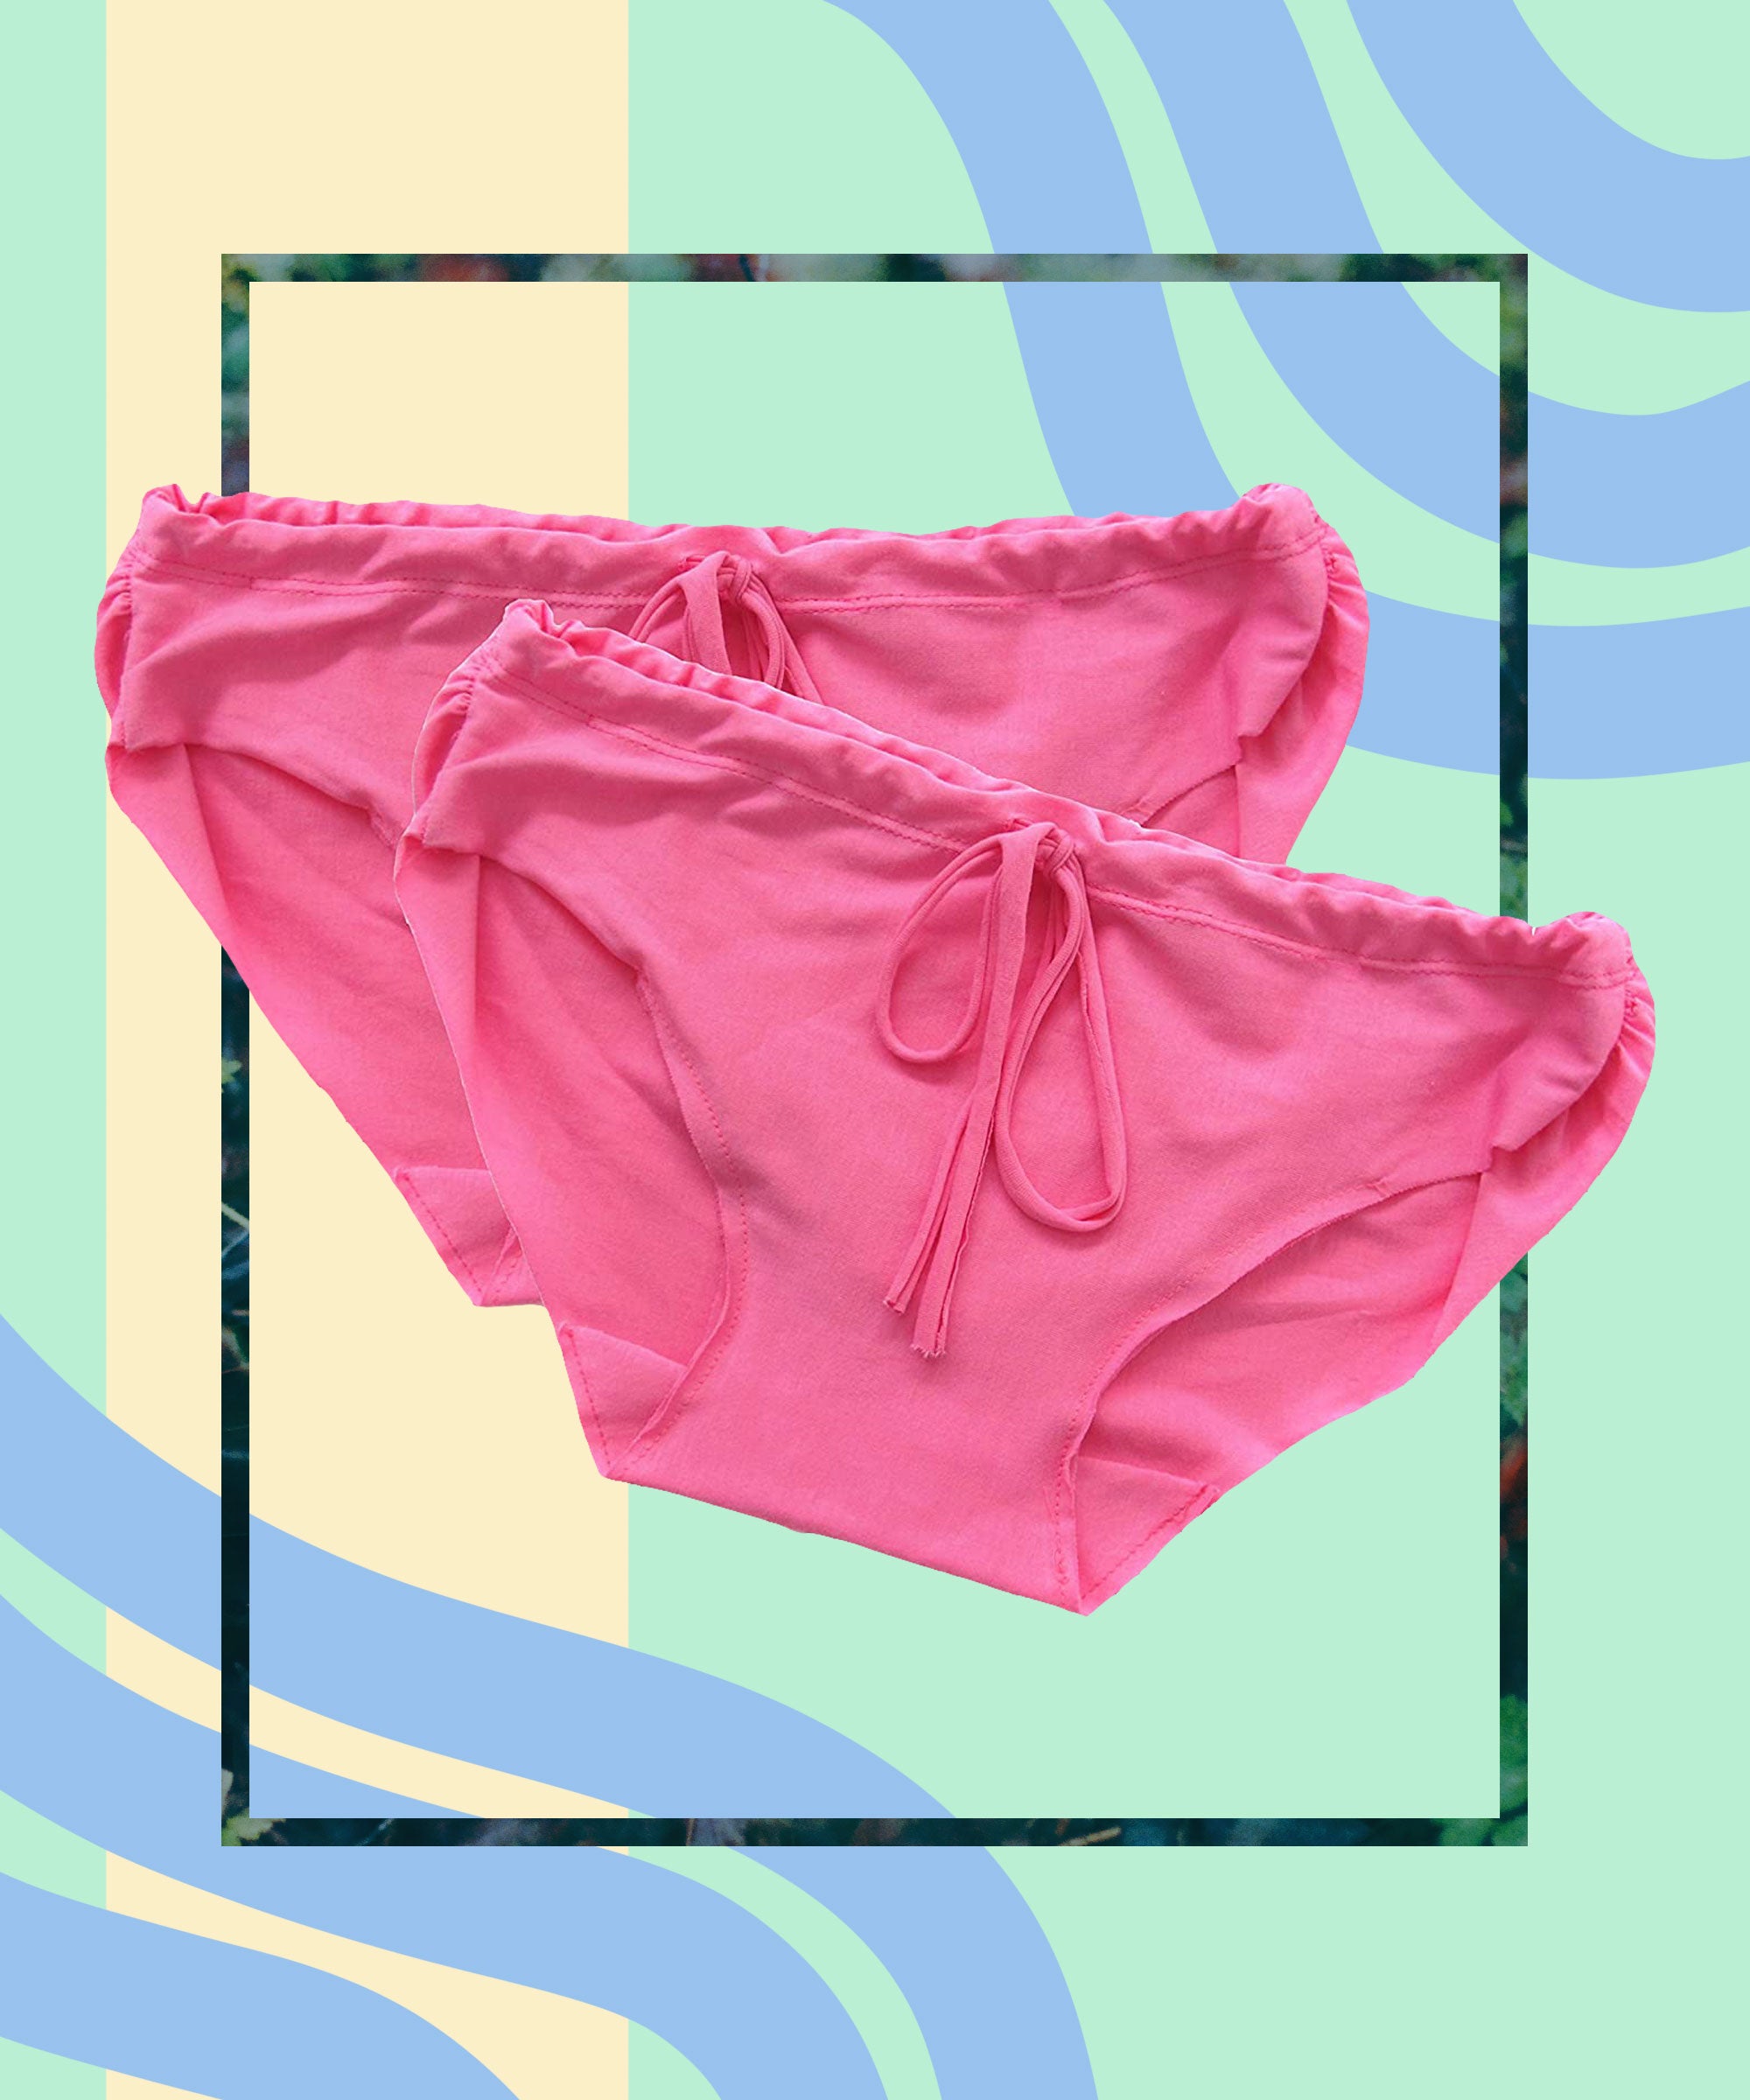 Best Postpartum Underwear  Bodily Postpartum Underwear Reviews